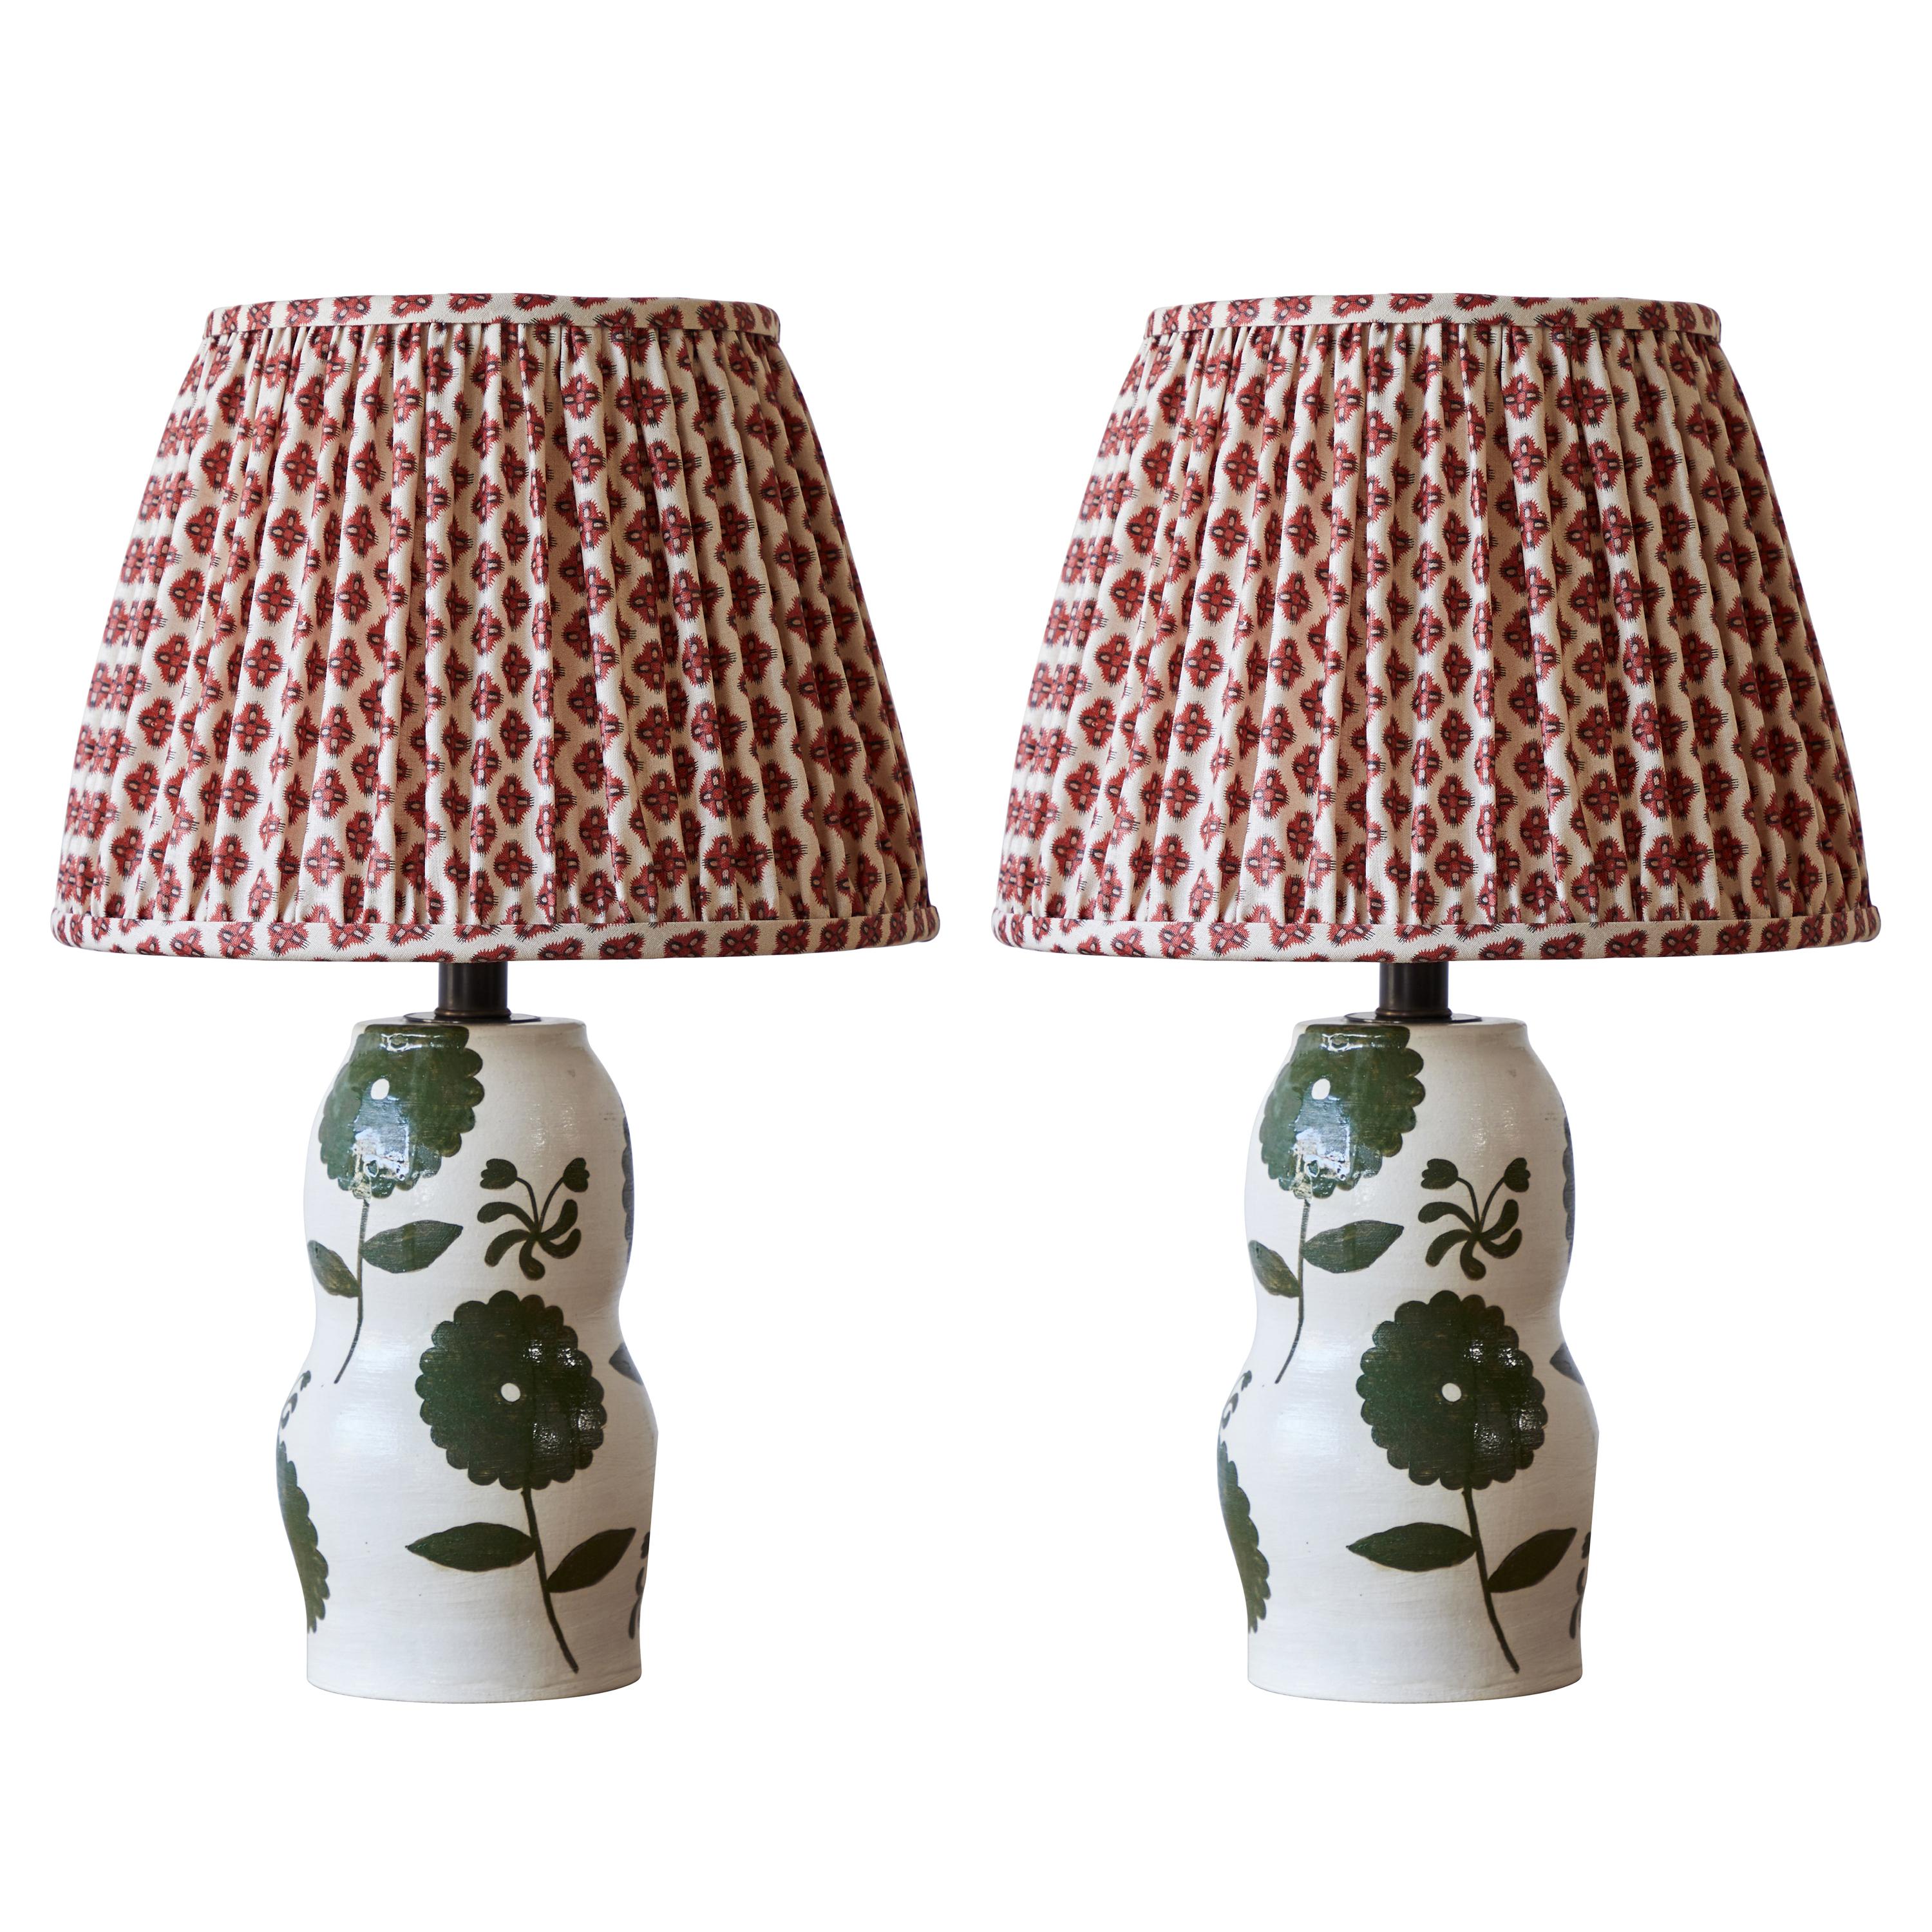 Pair of Rebekah Miles Ceramic Table Lamp